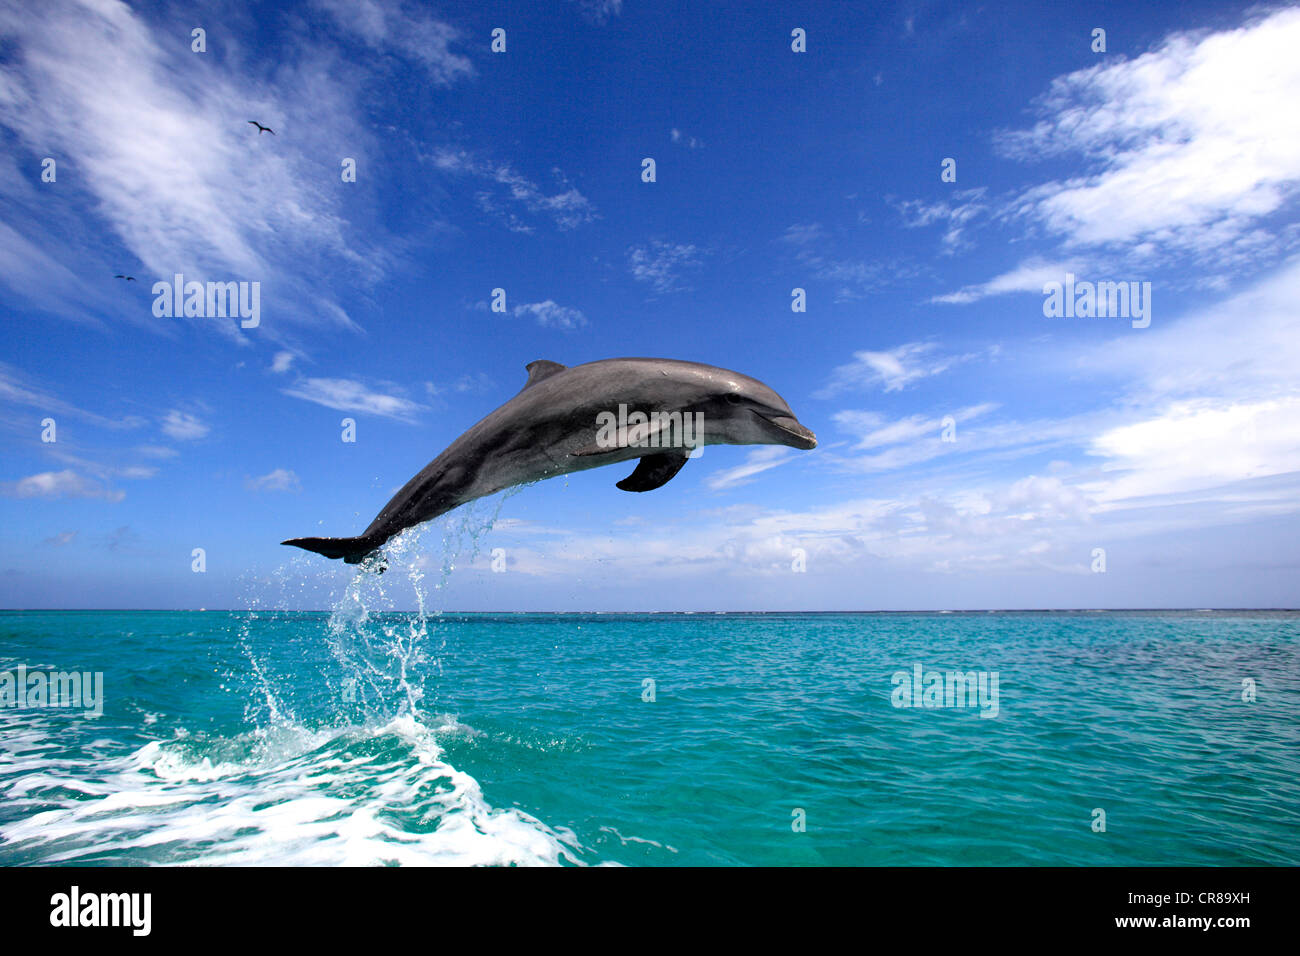 El delfín mular (Tursiops truncatus), adulto, saltando fuera del mar, Roatán, Honduras, El Caribe, América Central Foto de stock